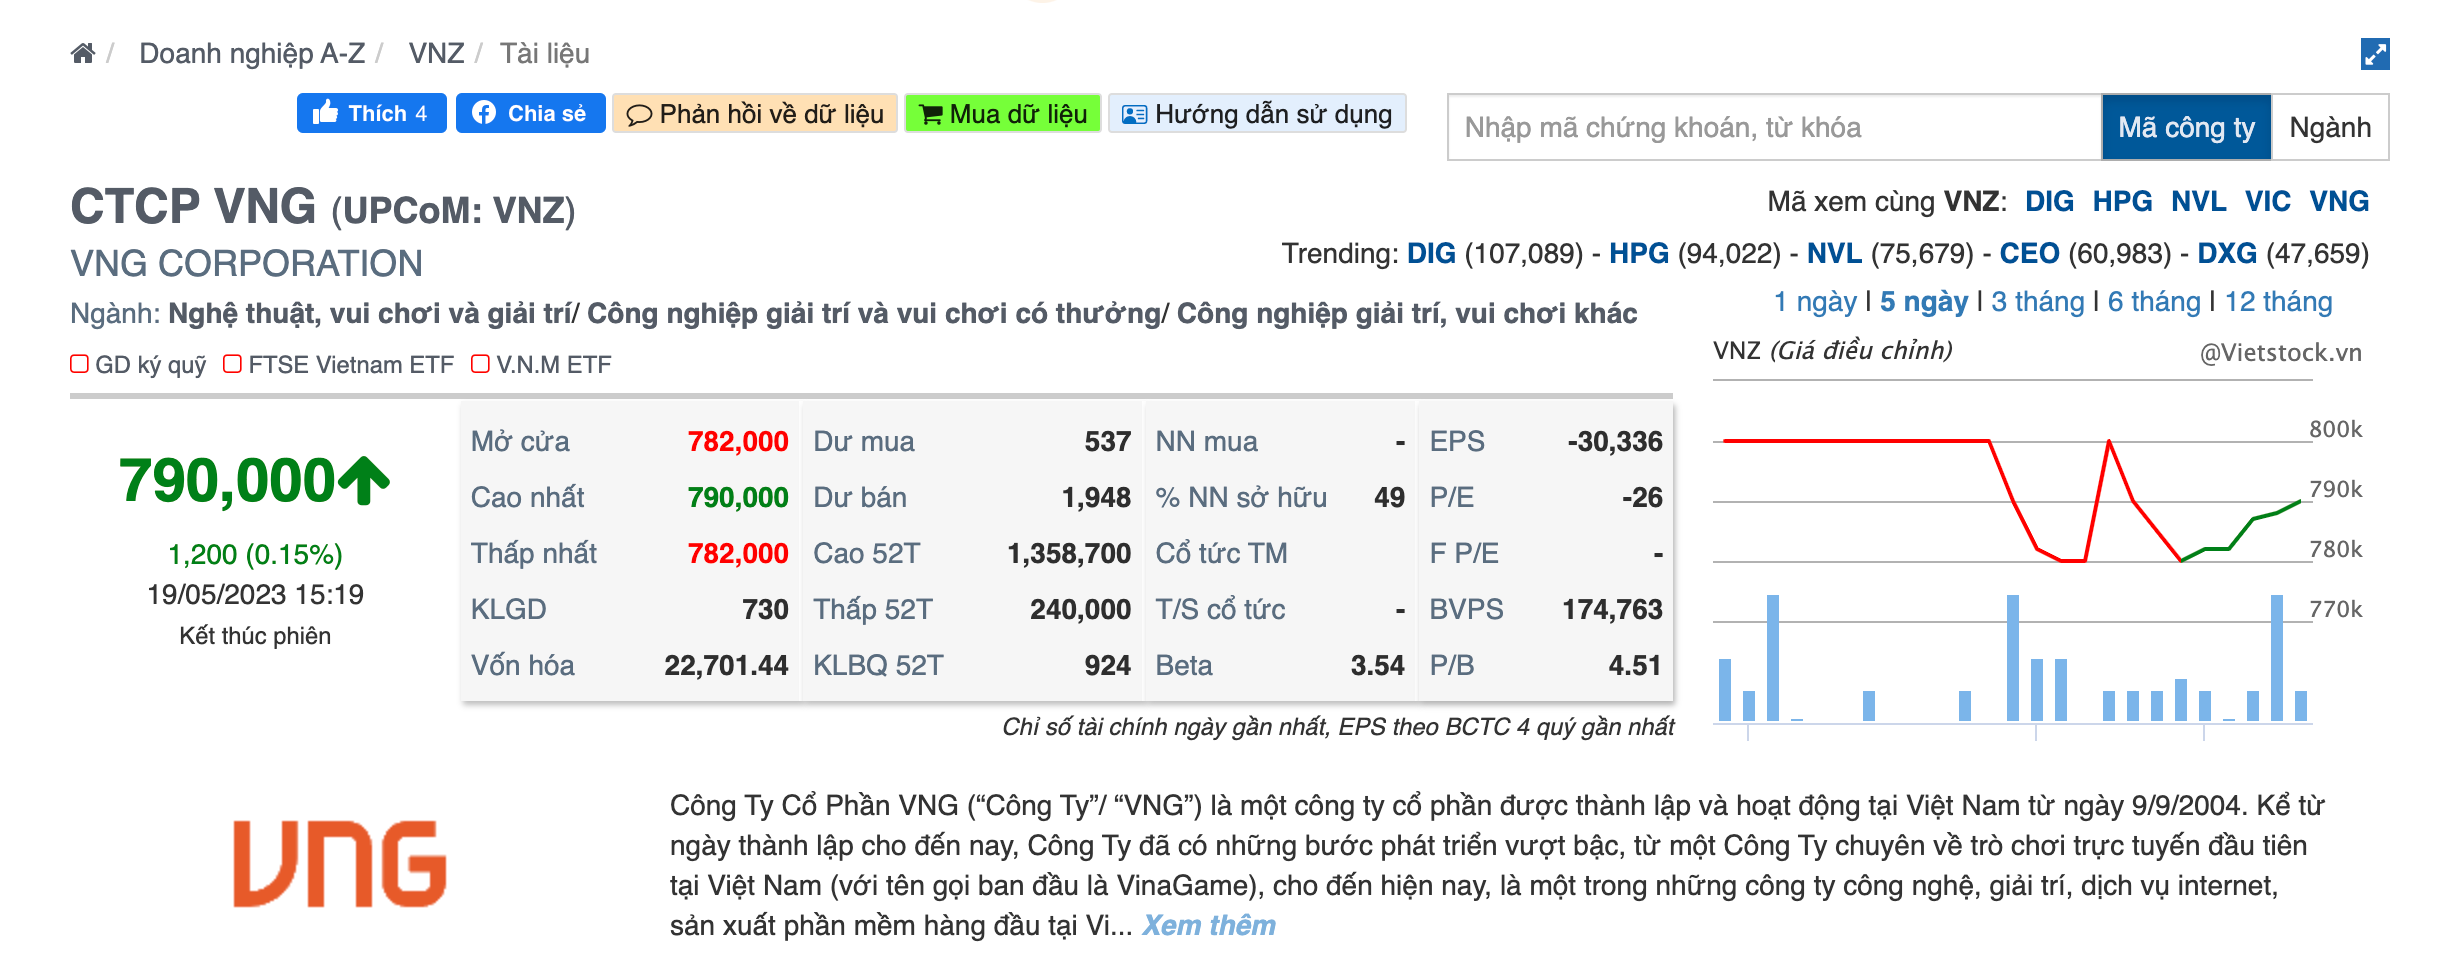 Giá cổ phiếu VNZ của VNG giao dịch ở ngưỡng 790.000 đồng/cổ phiếu. Ảnh: Chụp màn hình.